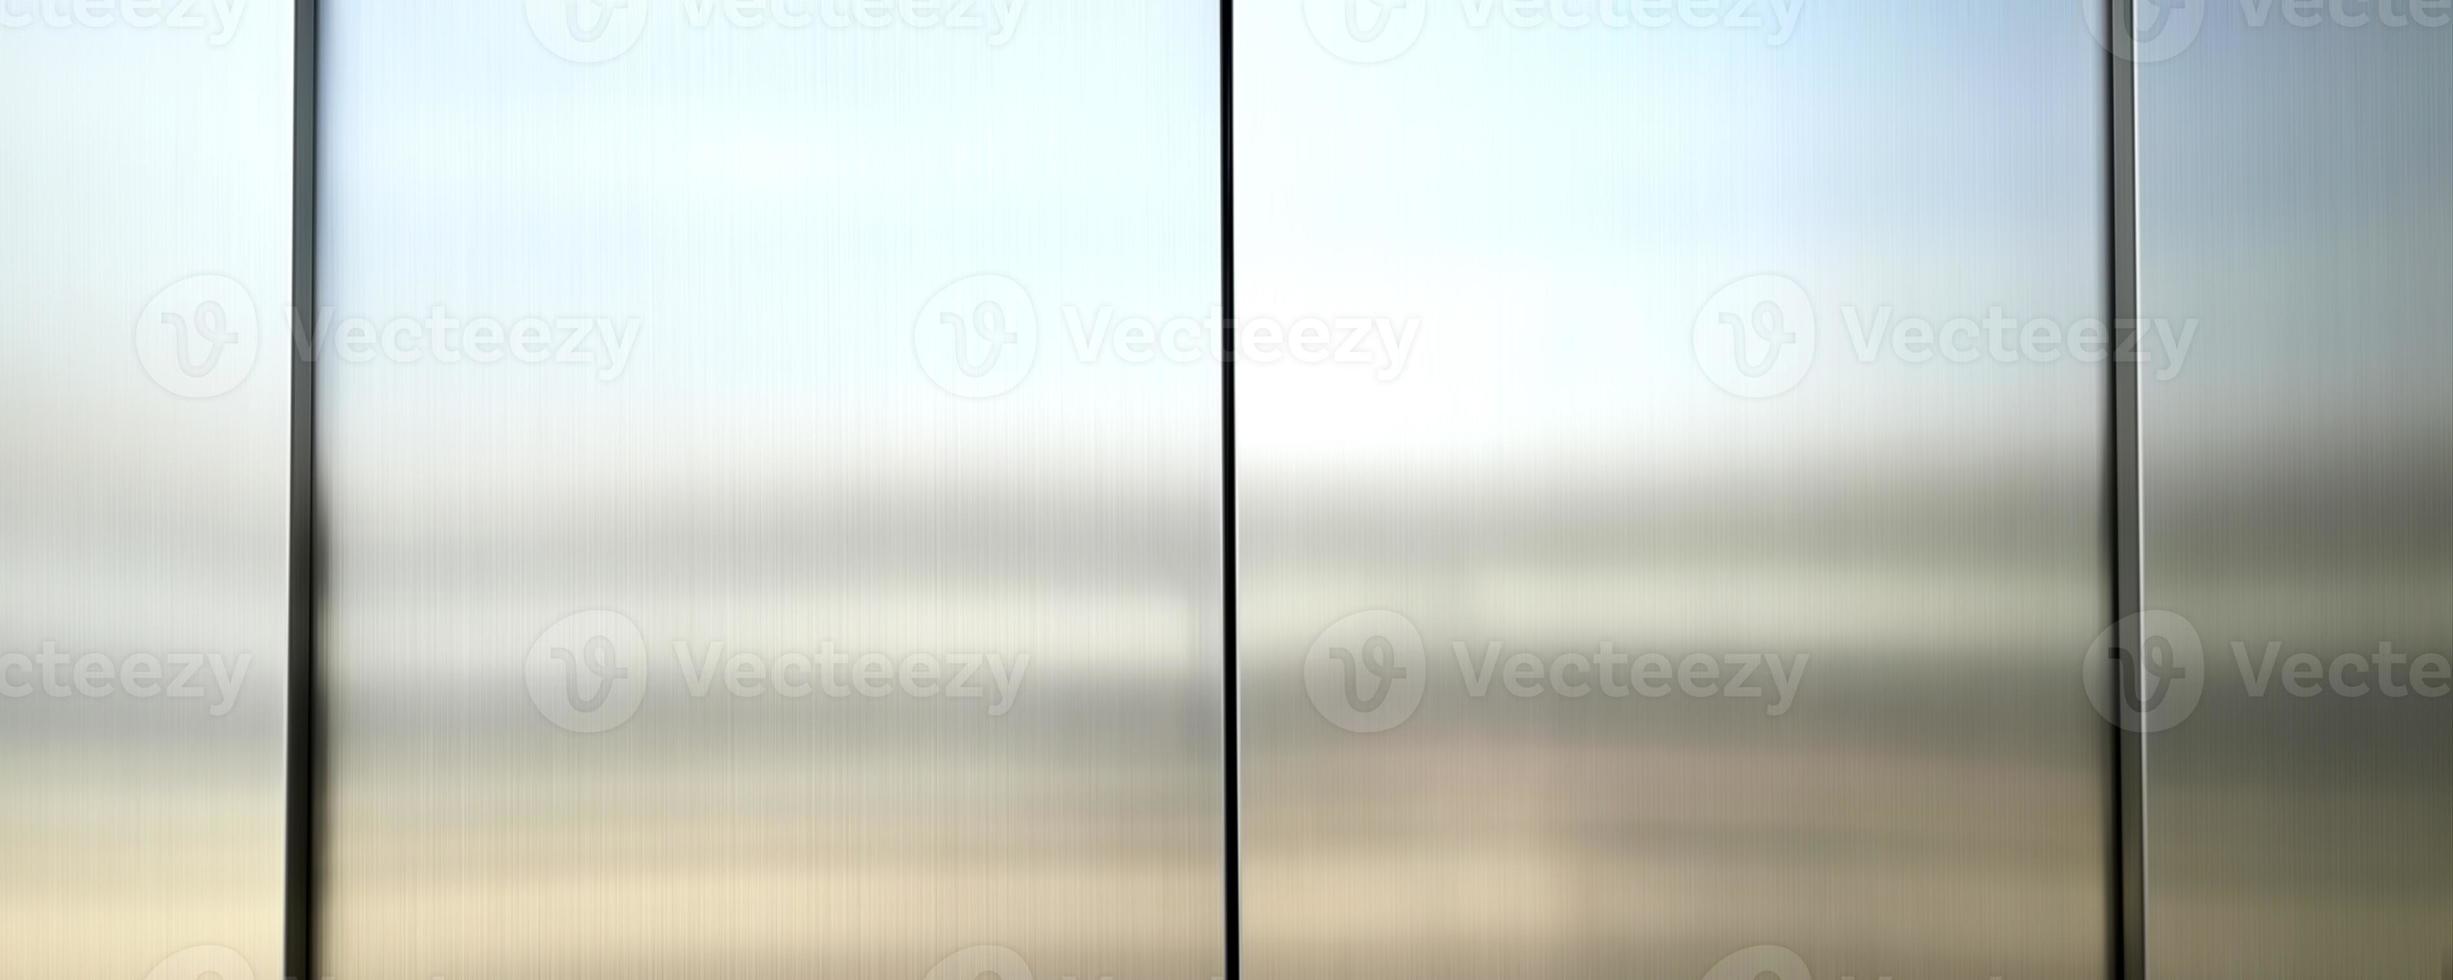 reflectie van licht op een glanzend metalen oppervlak, roestvrijstalen paneelachtergrond, zilveren ruimteachtergrond. foto